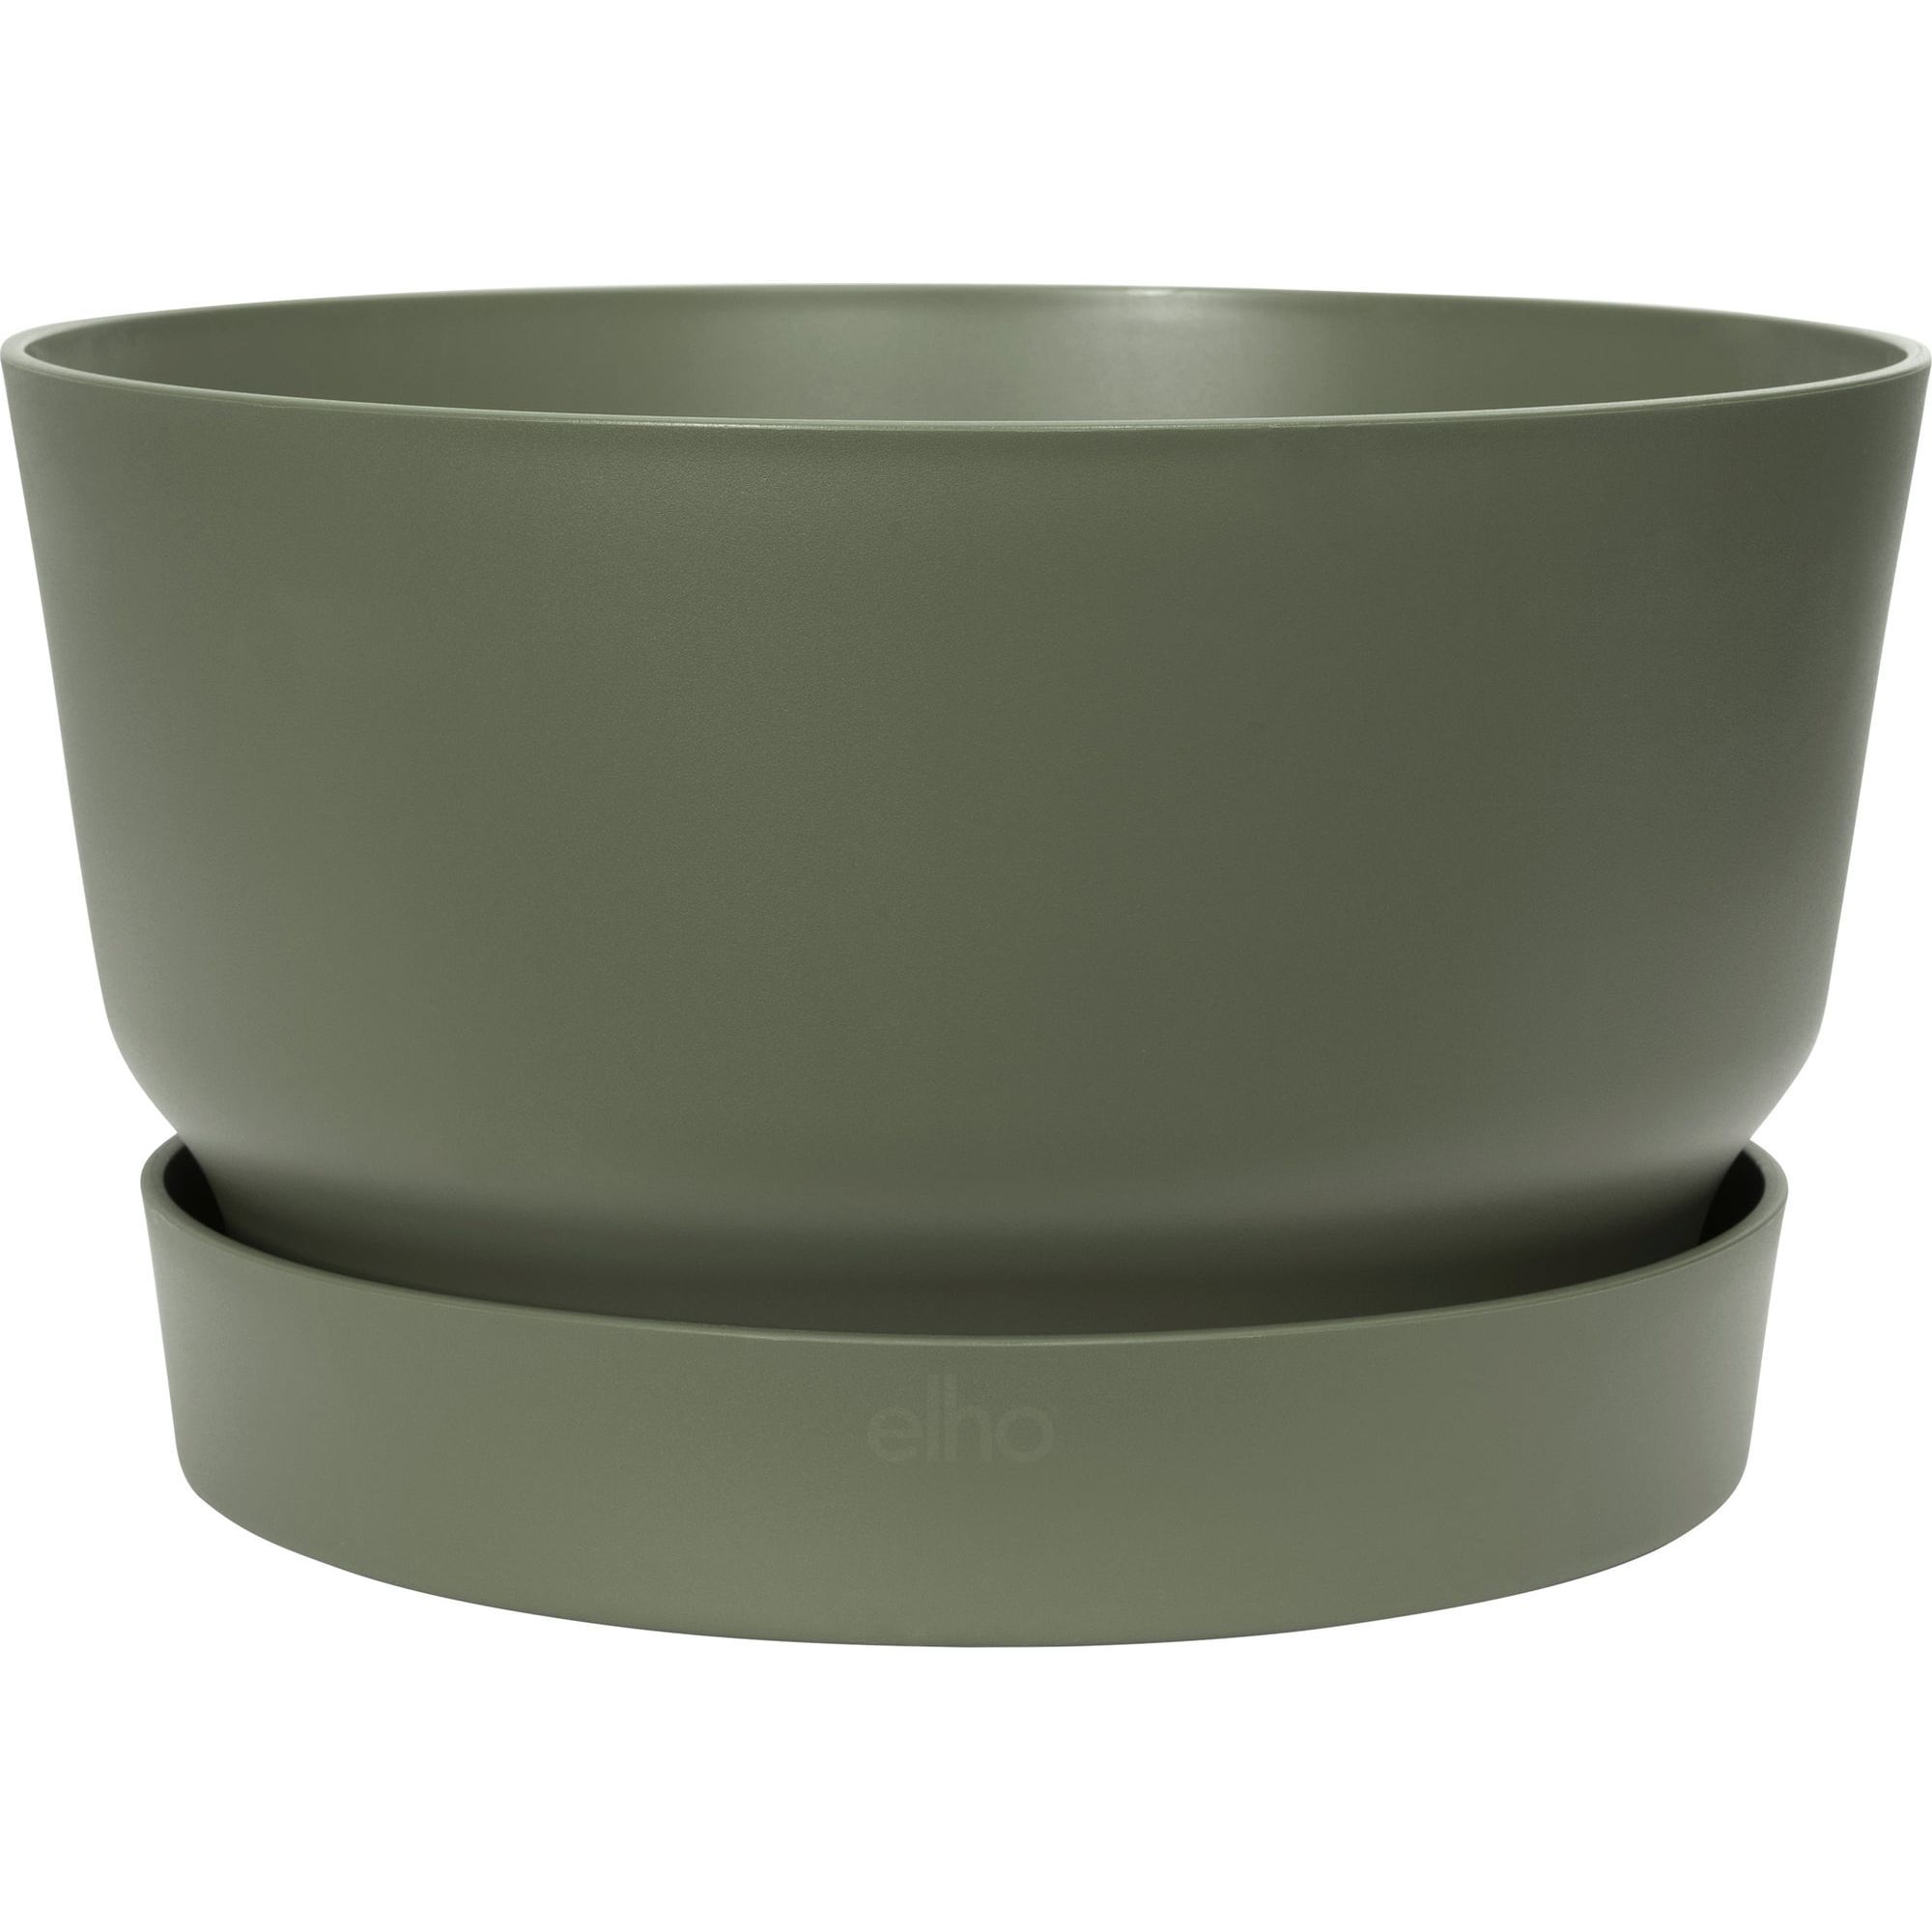 Горшок Elho Greenville Bowl 33 см зеленый (332464) - фото 1